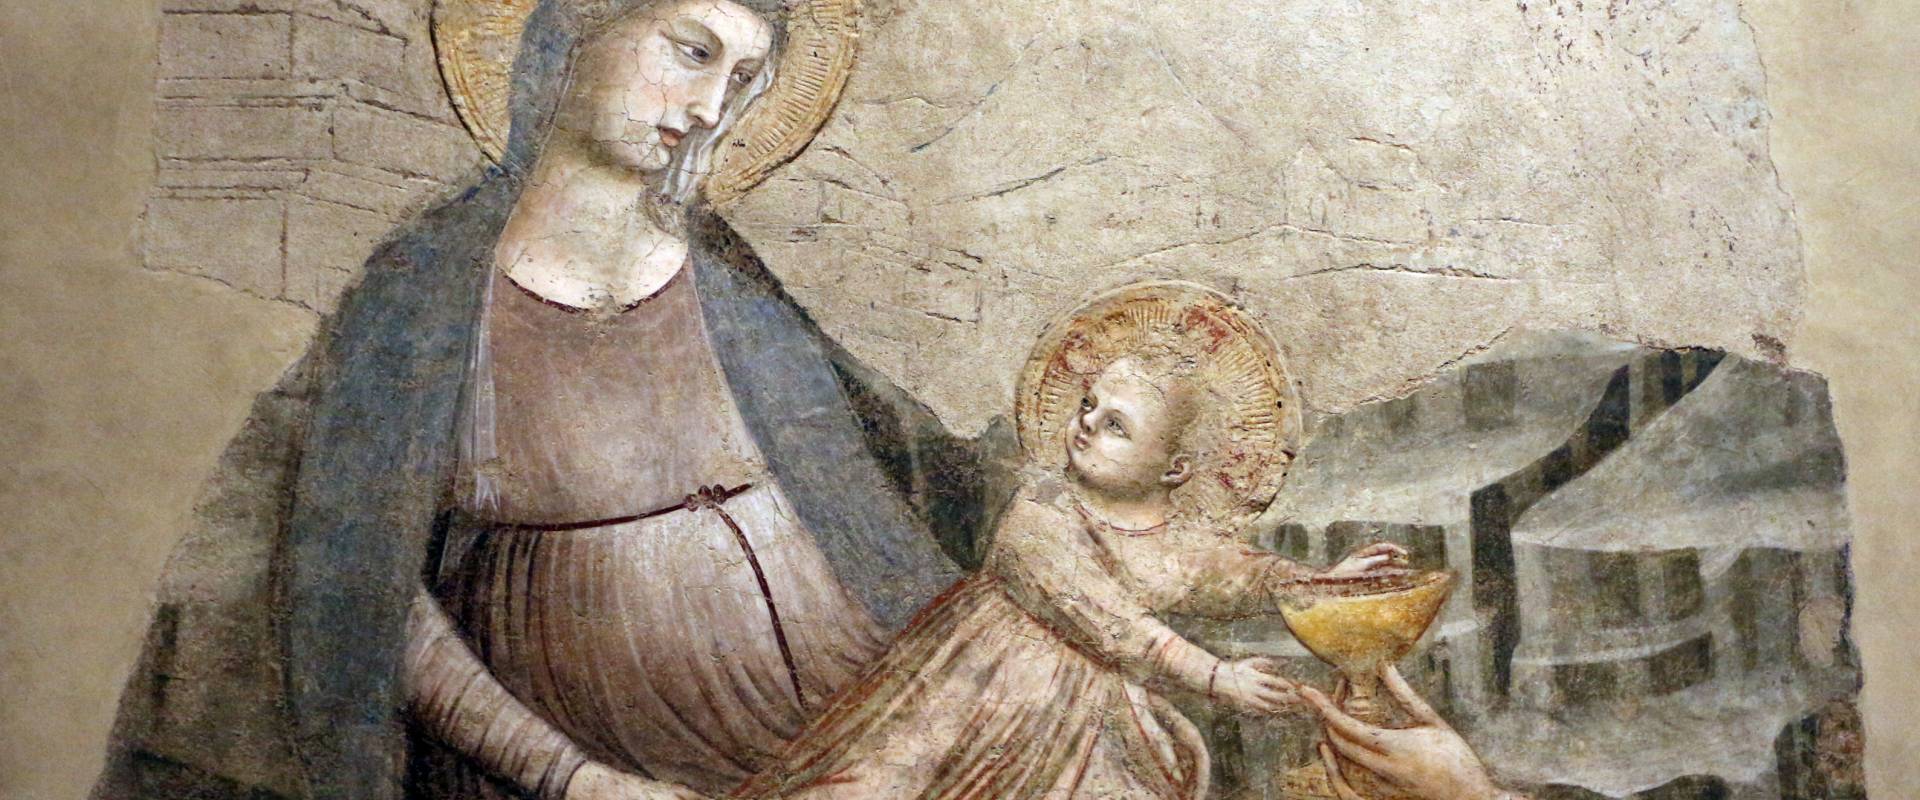 Pietro da rimini e bottega, affreschi dalla chiesa di s. chiara a ravenna, 1310-20 ca., adorazione dei magi 02 foto di Sailko